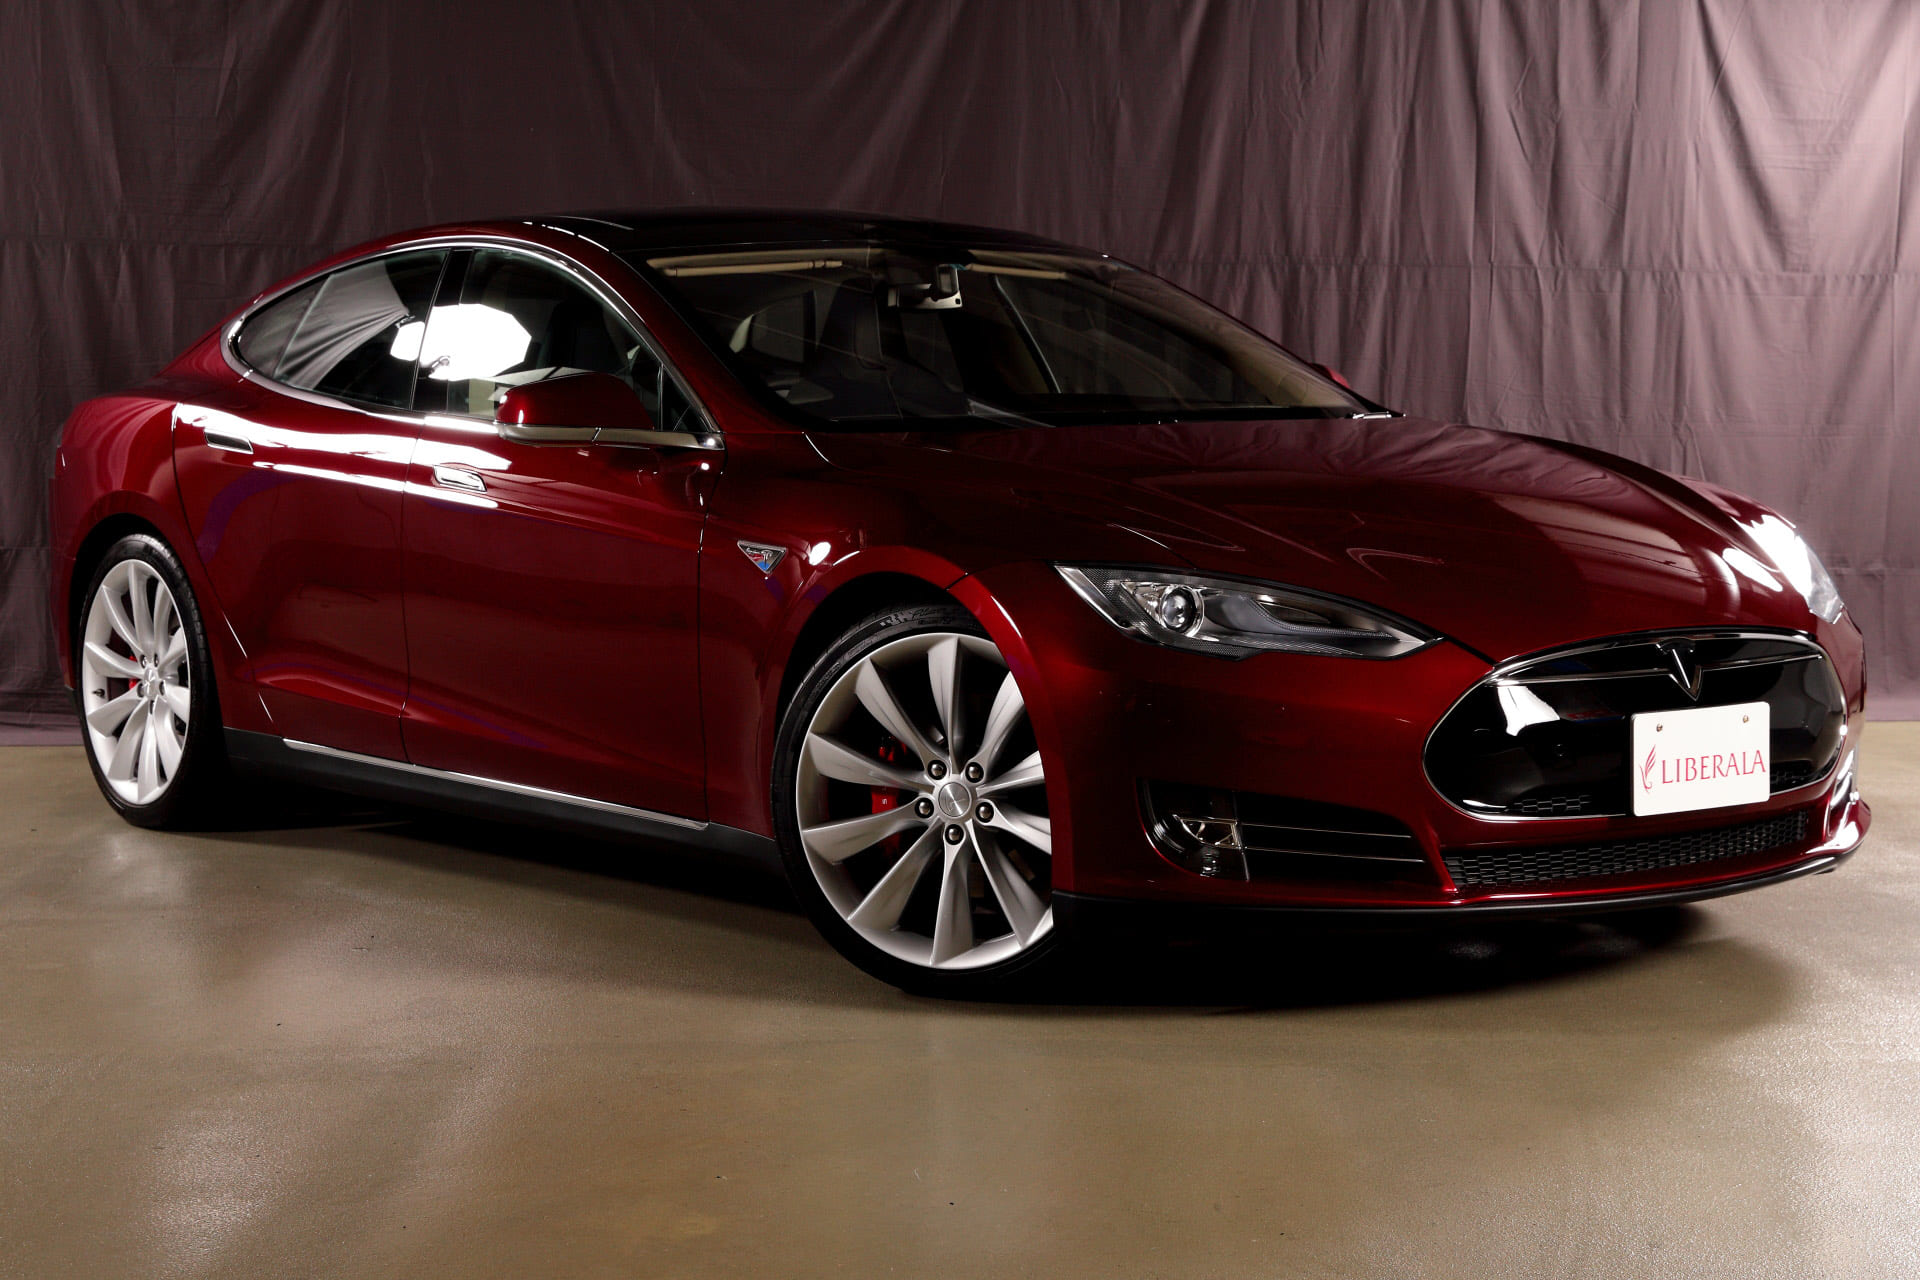 Tesla Motors Model S